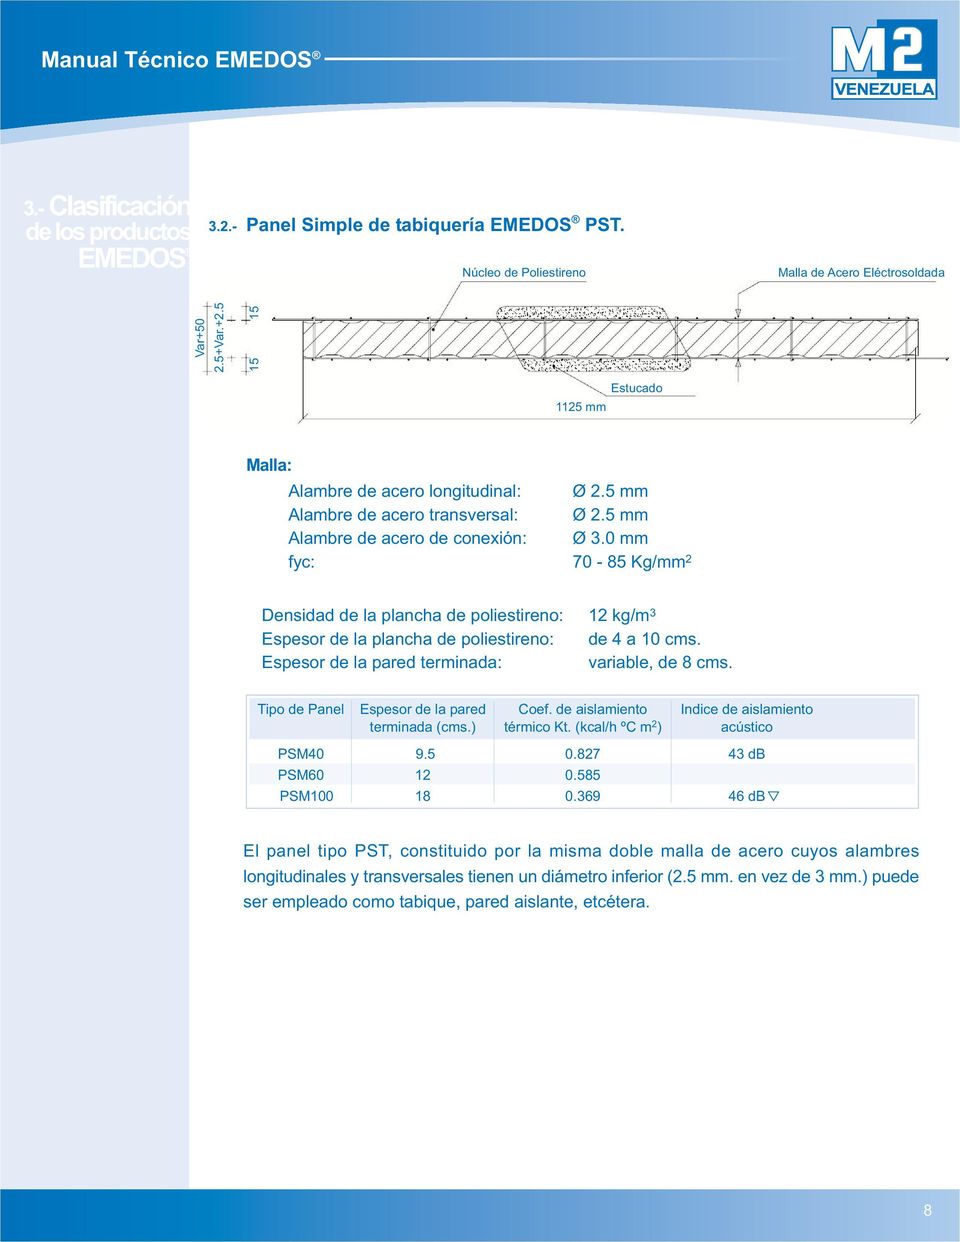 0 mm fyc: 70-85 Kg/mm 2 Densidad de la plancha de poliestireno: 12 kg/m 3 Espesor de la plancha de poliestireno: de 4 a 10 cms. Espesor de la pared terminada: variable, de 8 cms.